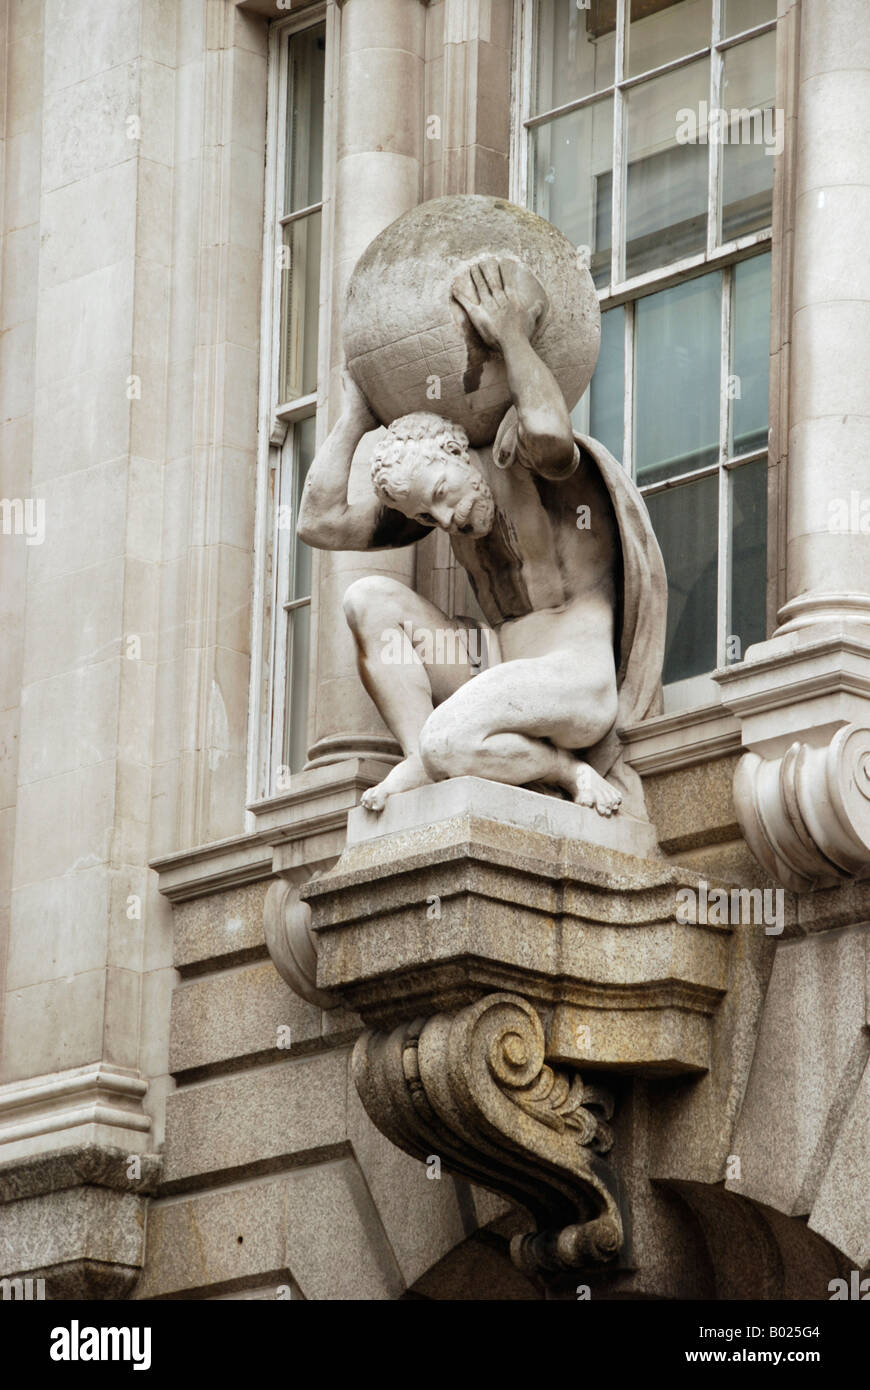 Statue of Atlas outside Atlas House in King Street London Stock Photo